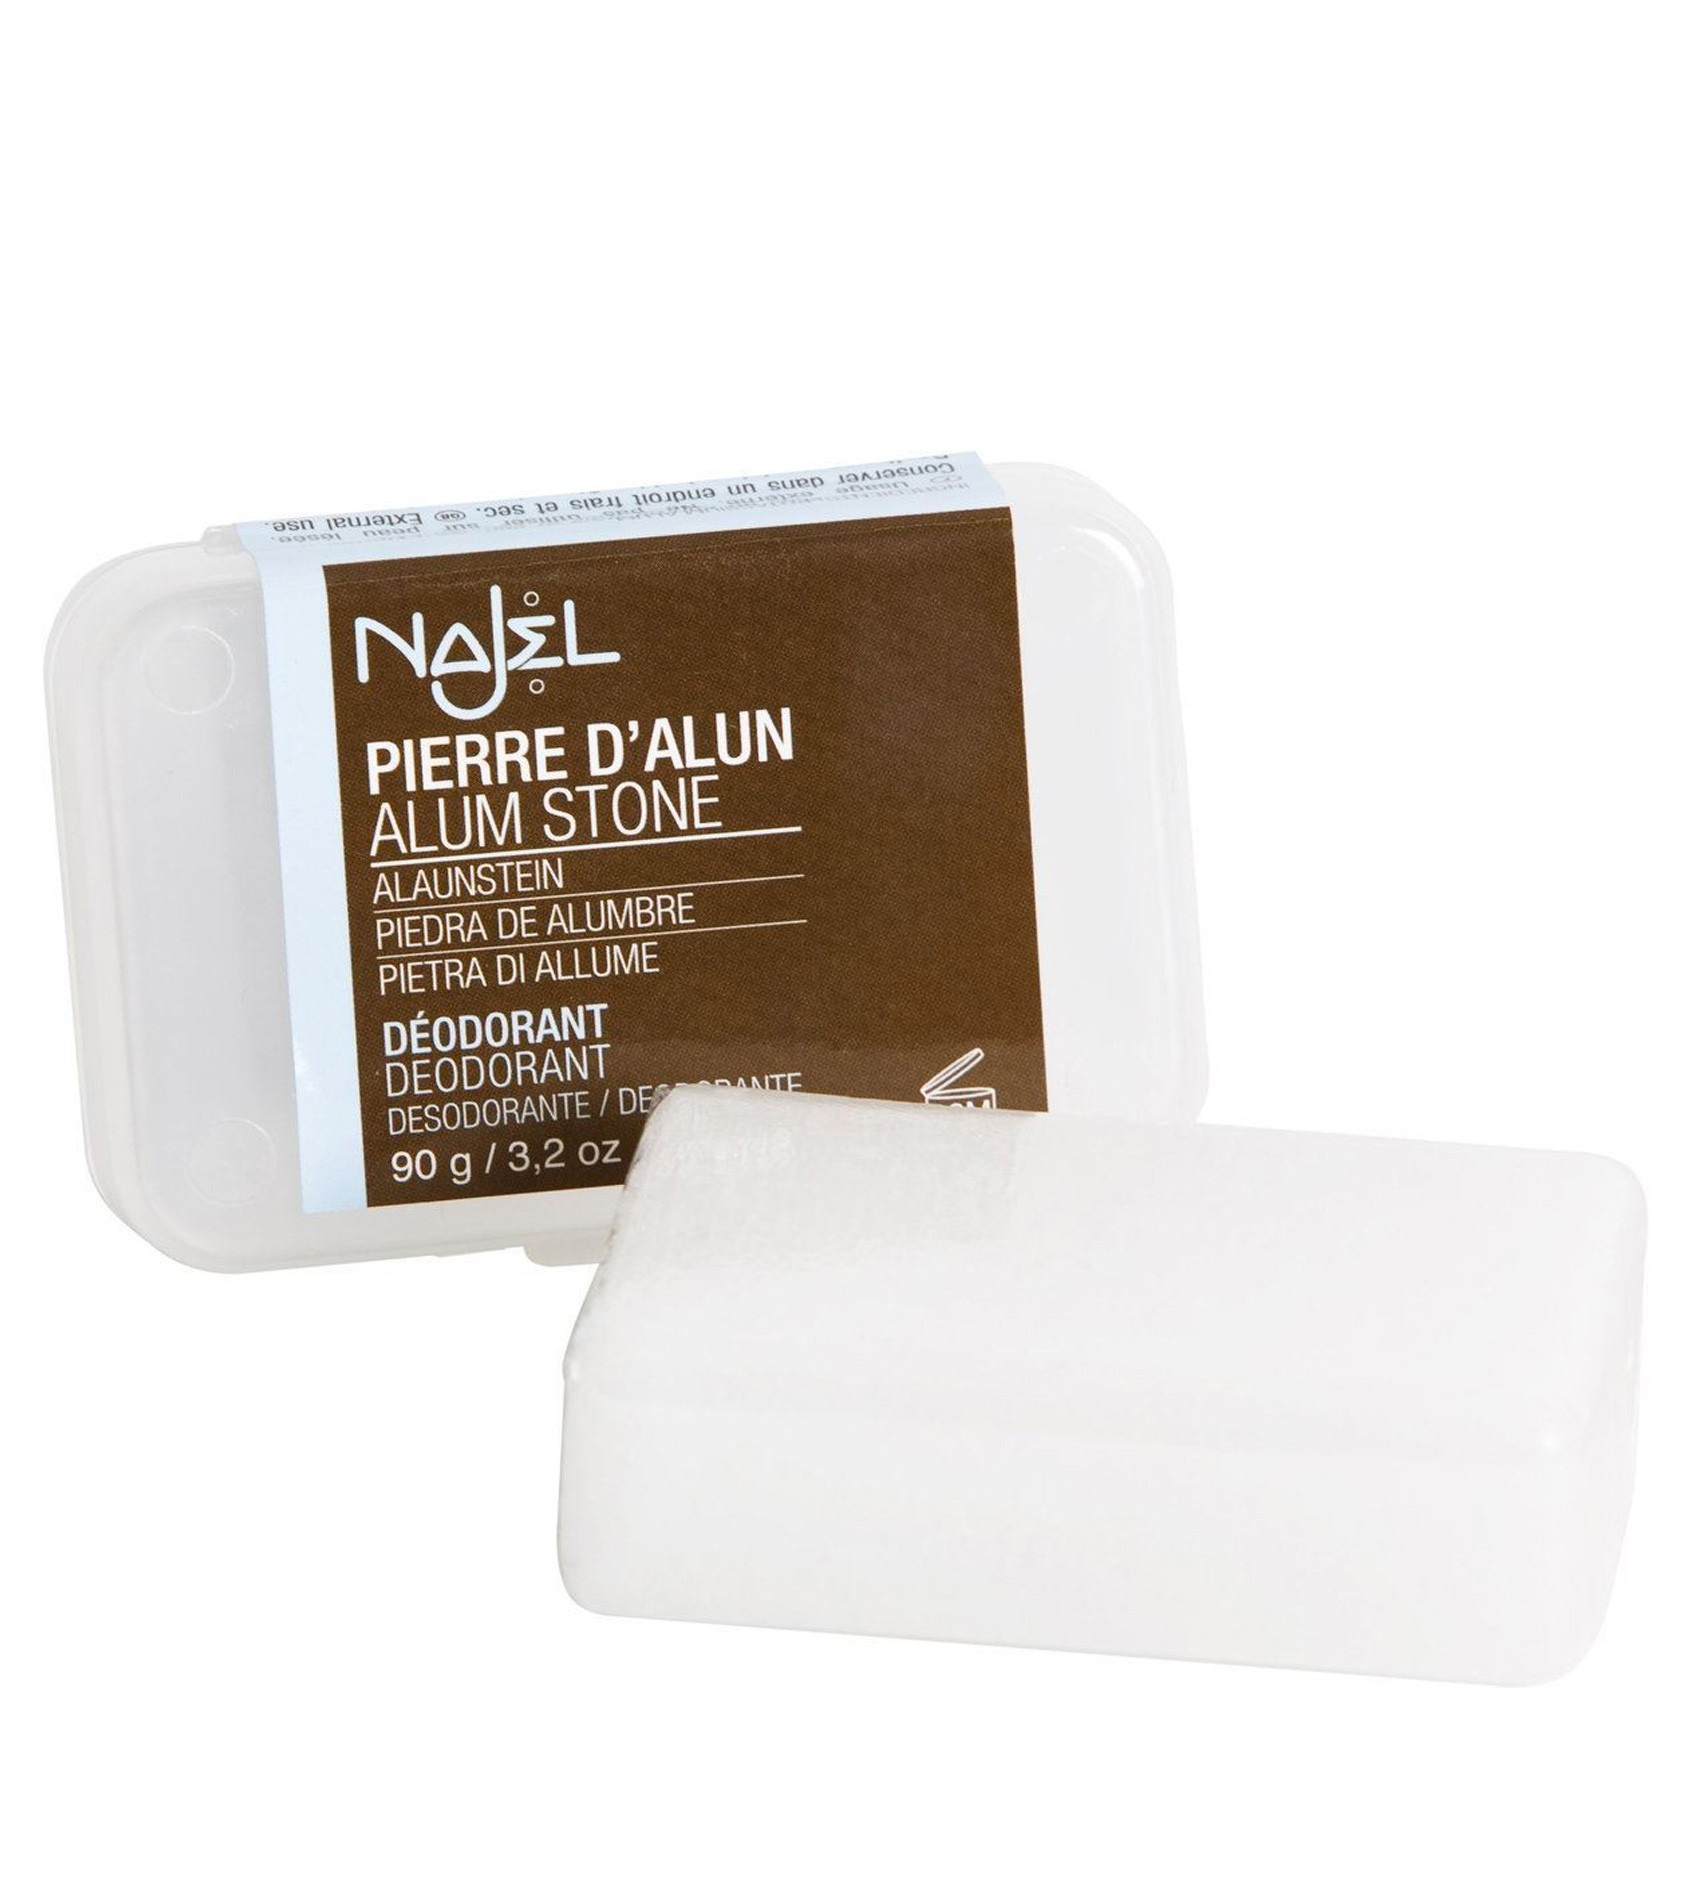 Najel Alum Stone Deodorant in Block